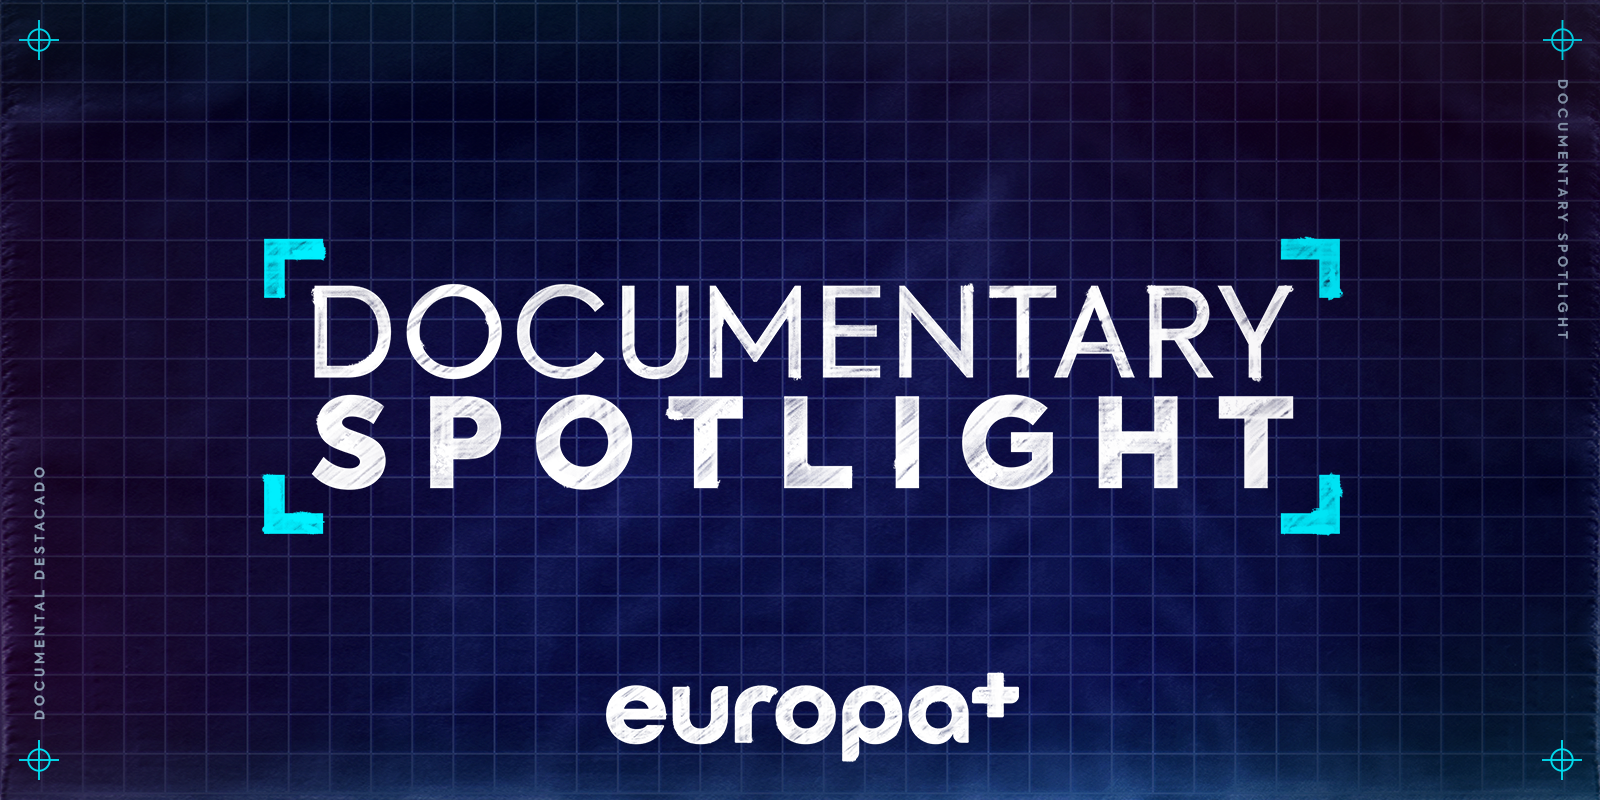 Documentary Spotlight on Europa+ banner